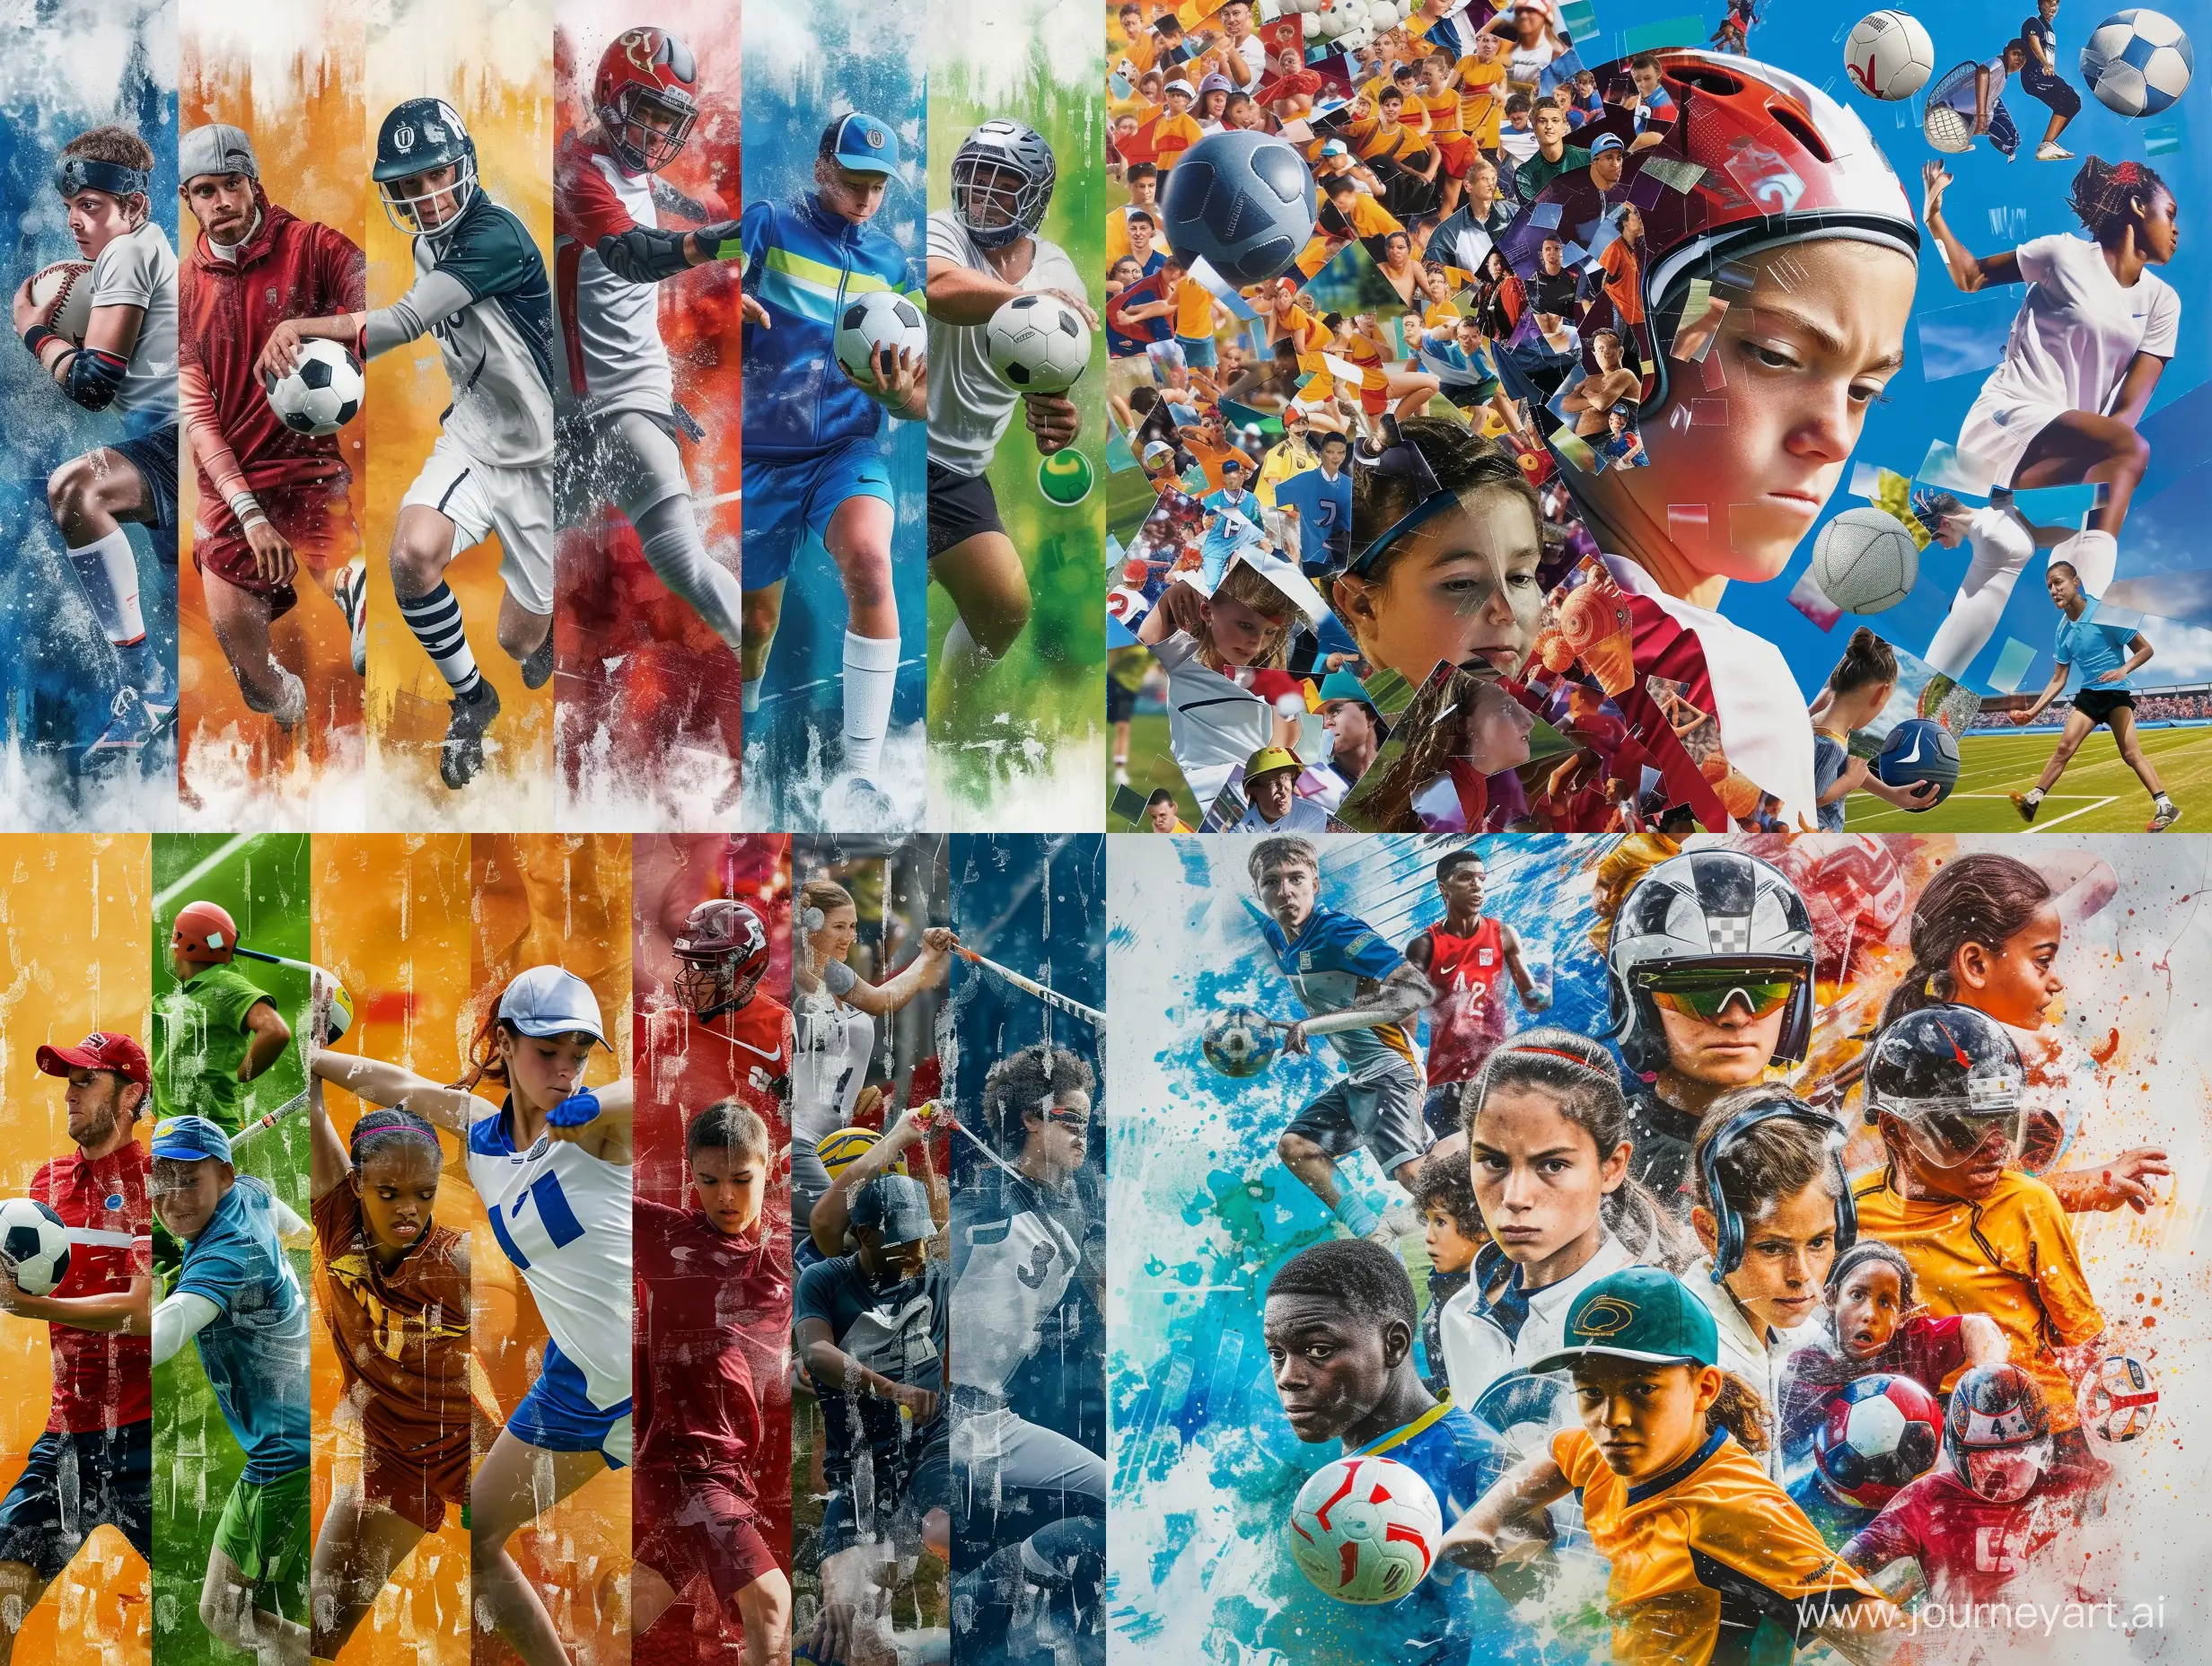 Haz un collage en un poster vertical de varios deportes. Que sea para niños. No pongas a personas.